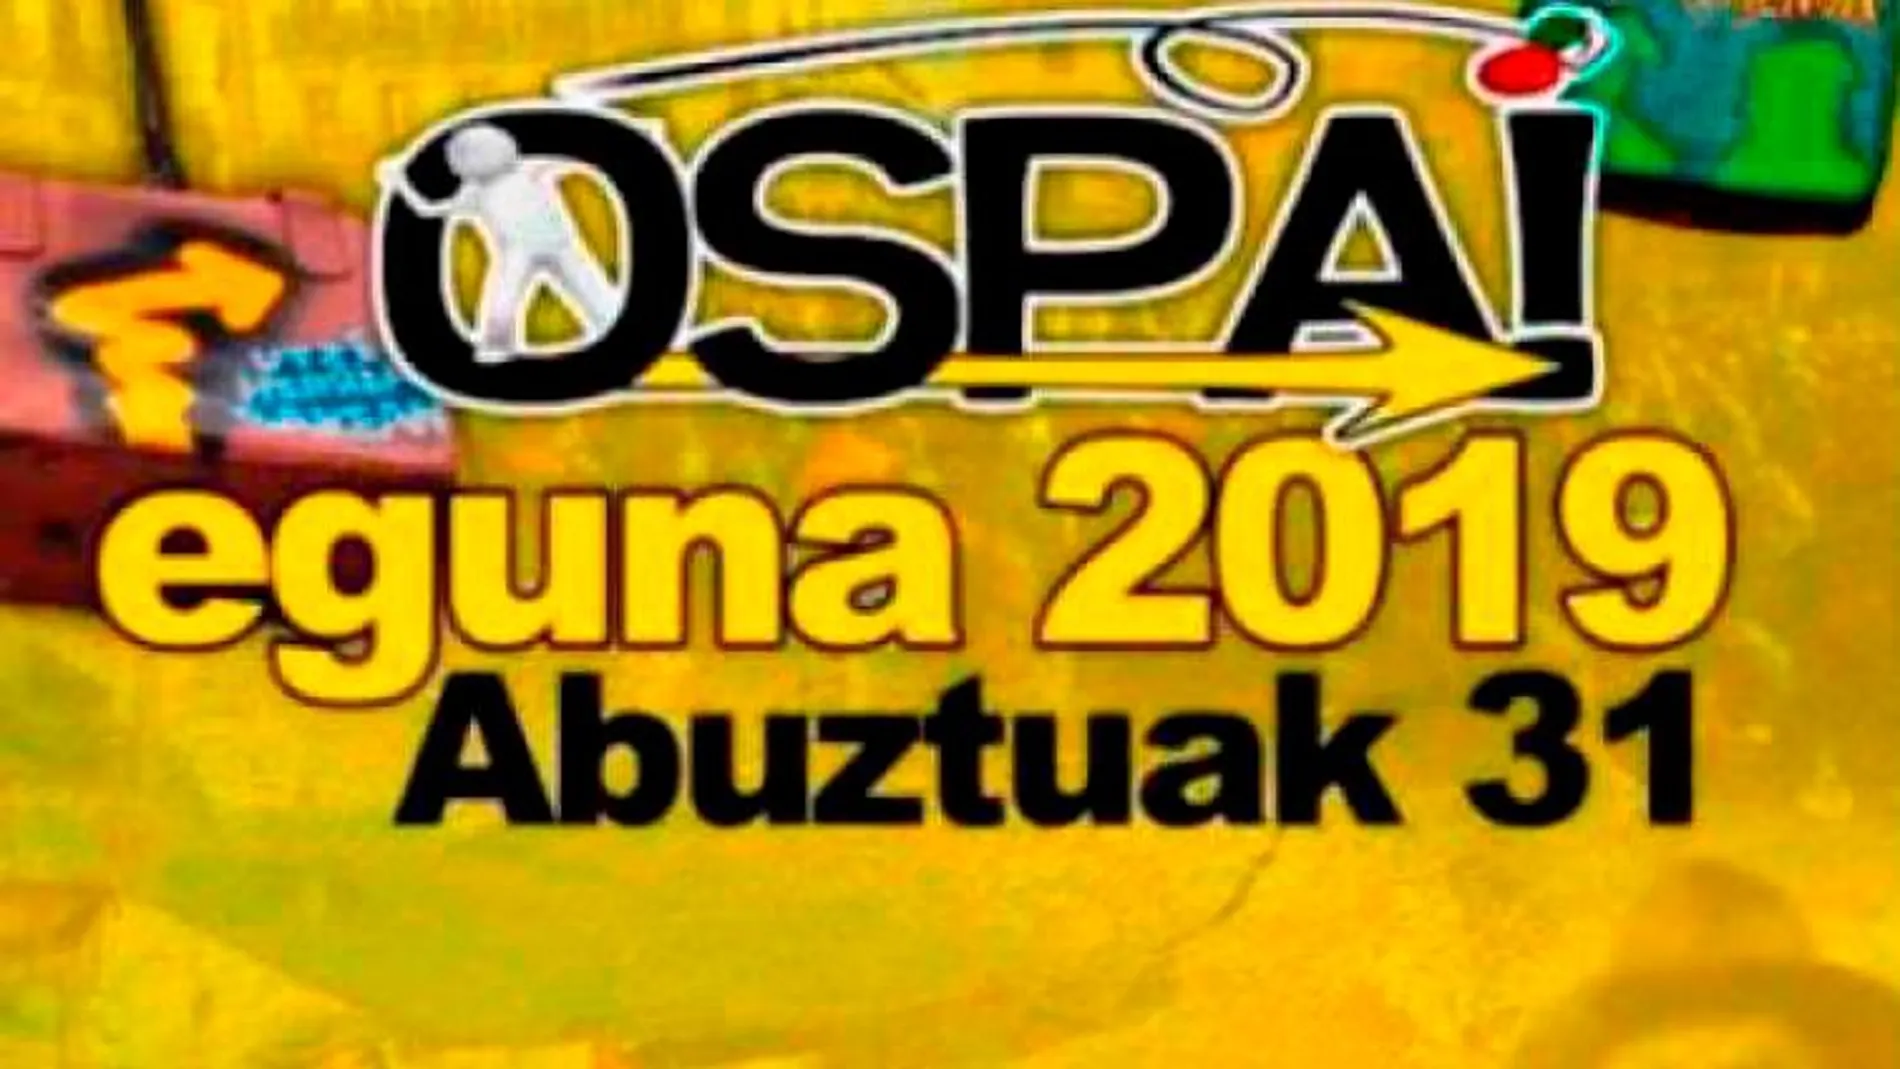 Este año, el “Ospa Eguna” se celebra el 31 de agosto